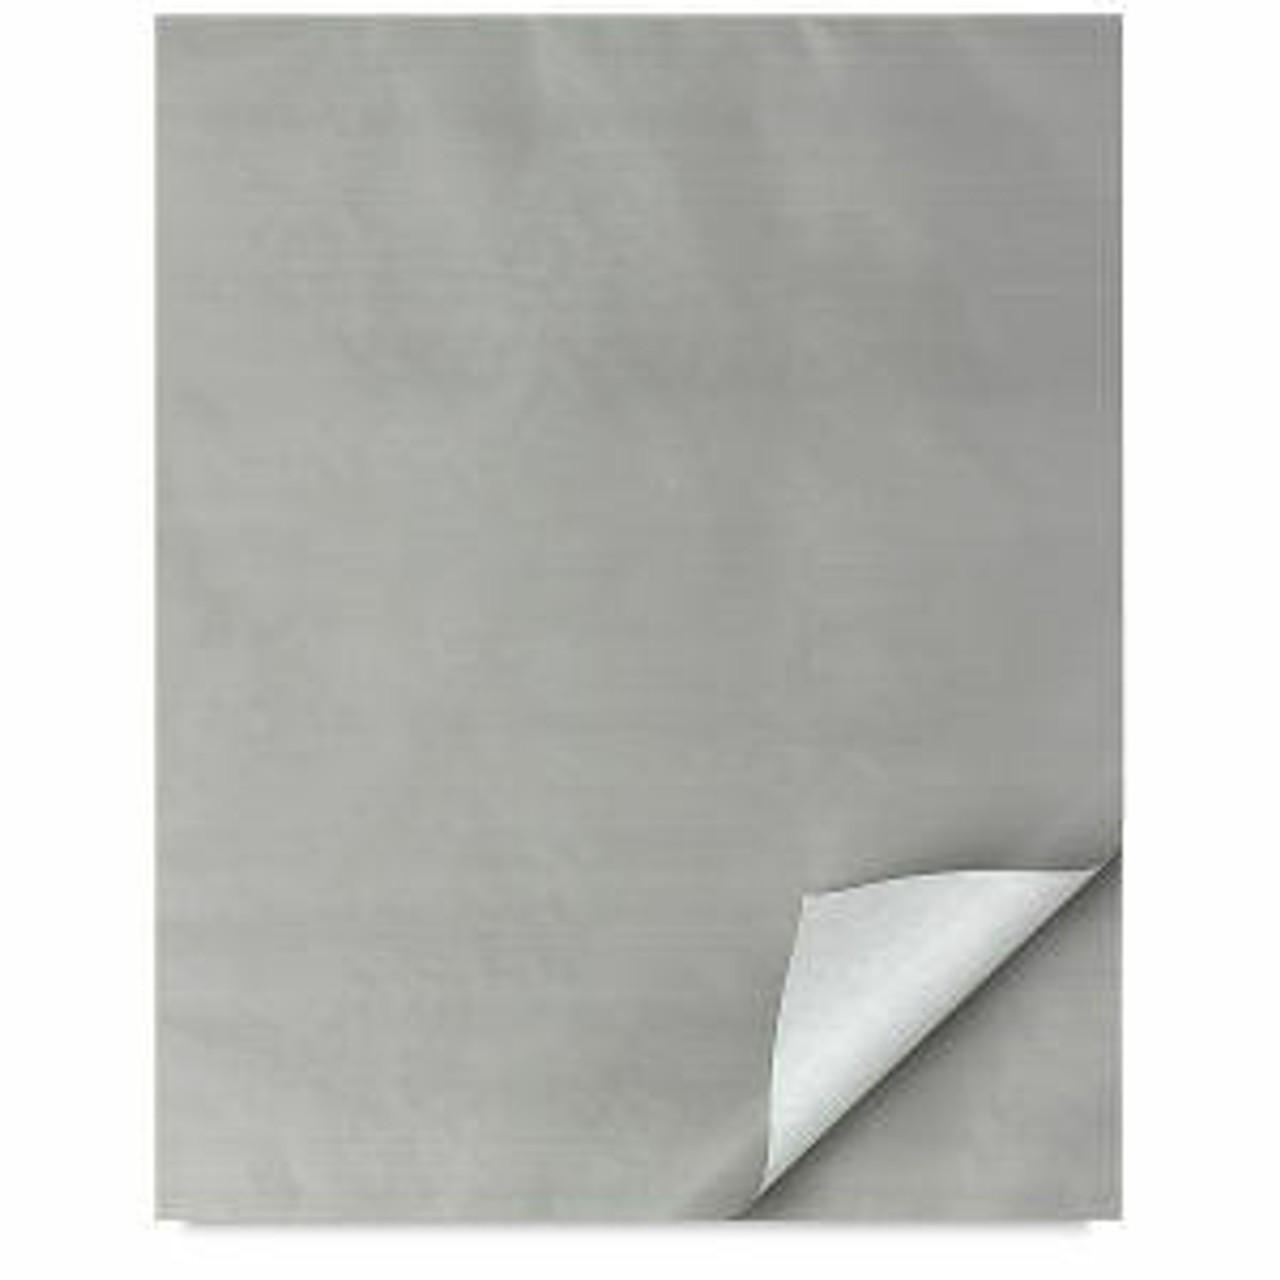 Canson XL Disposable Palette Paper 9x12, 40 Sheets